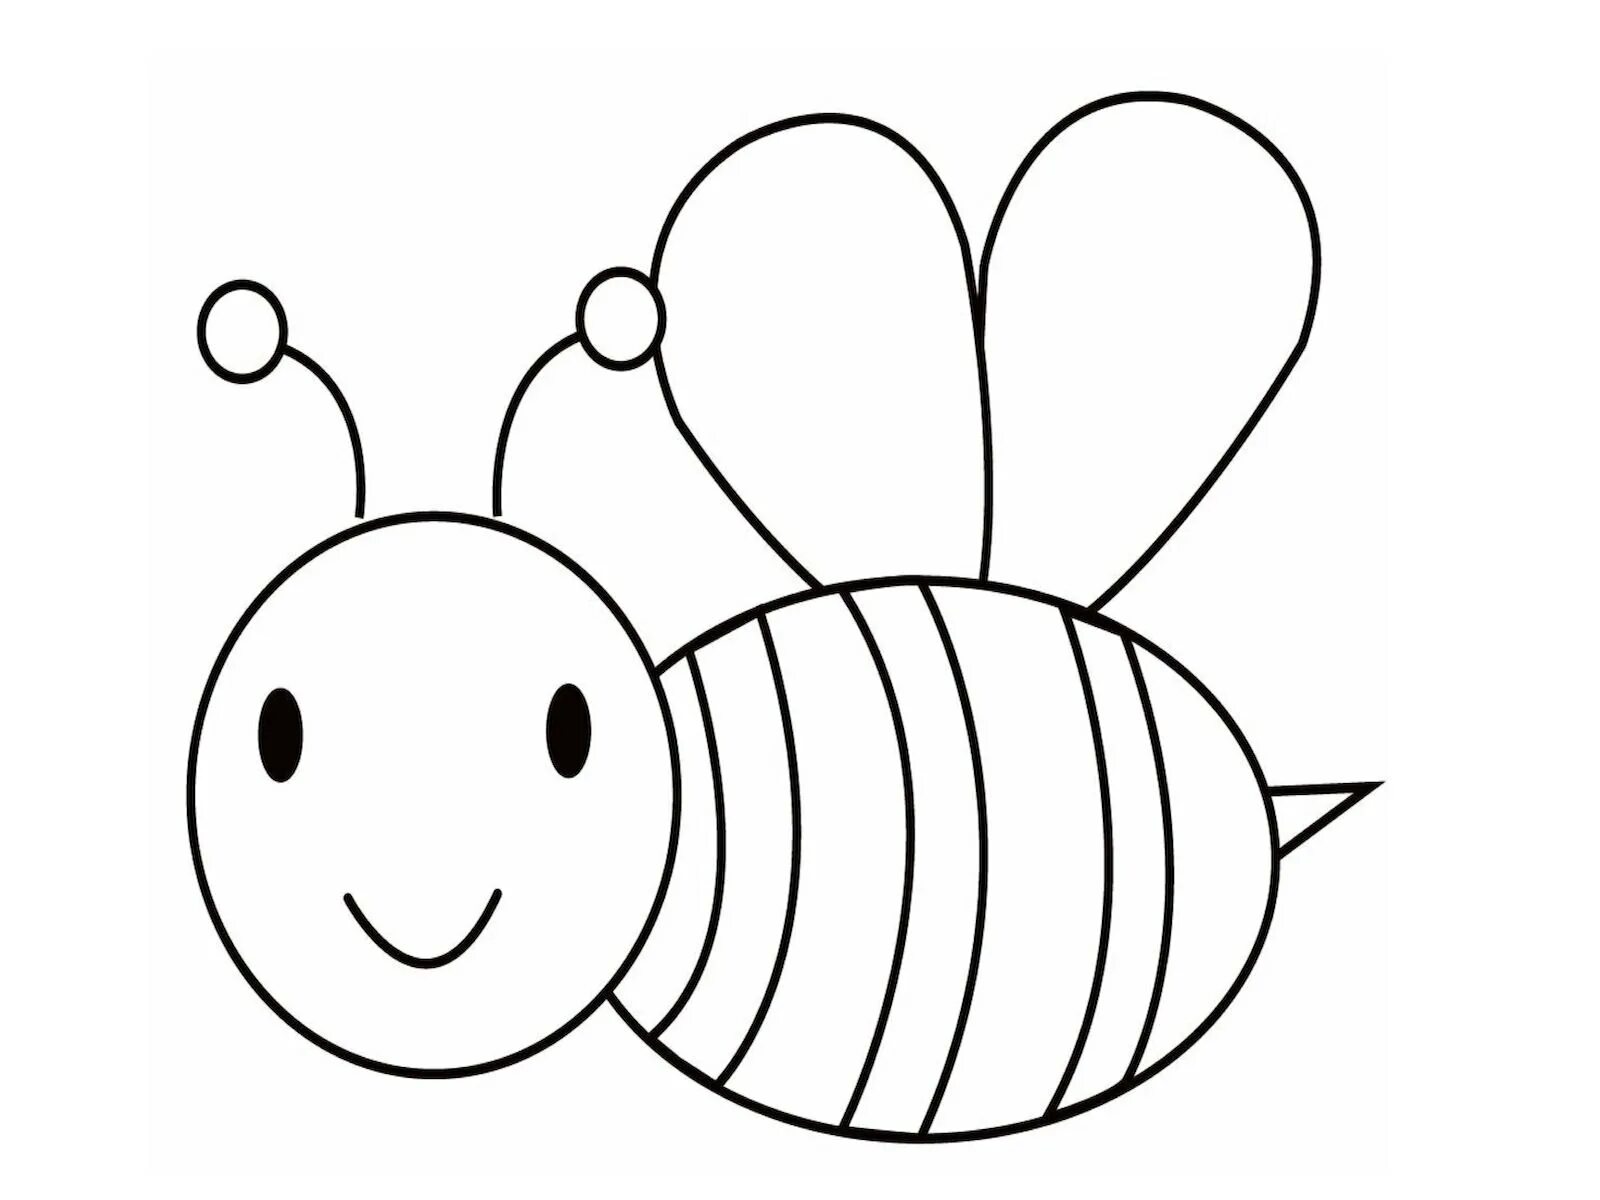 Насекомые раскраска для детей 3 4 лет. Пчела раскраска для детей. Пчелка раскраска для малышей. Пчелка для раскрашивания детям. Раскраска пчёлка для детей.